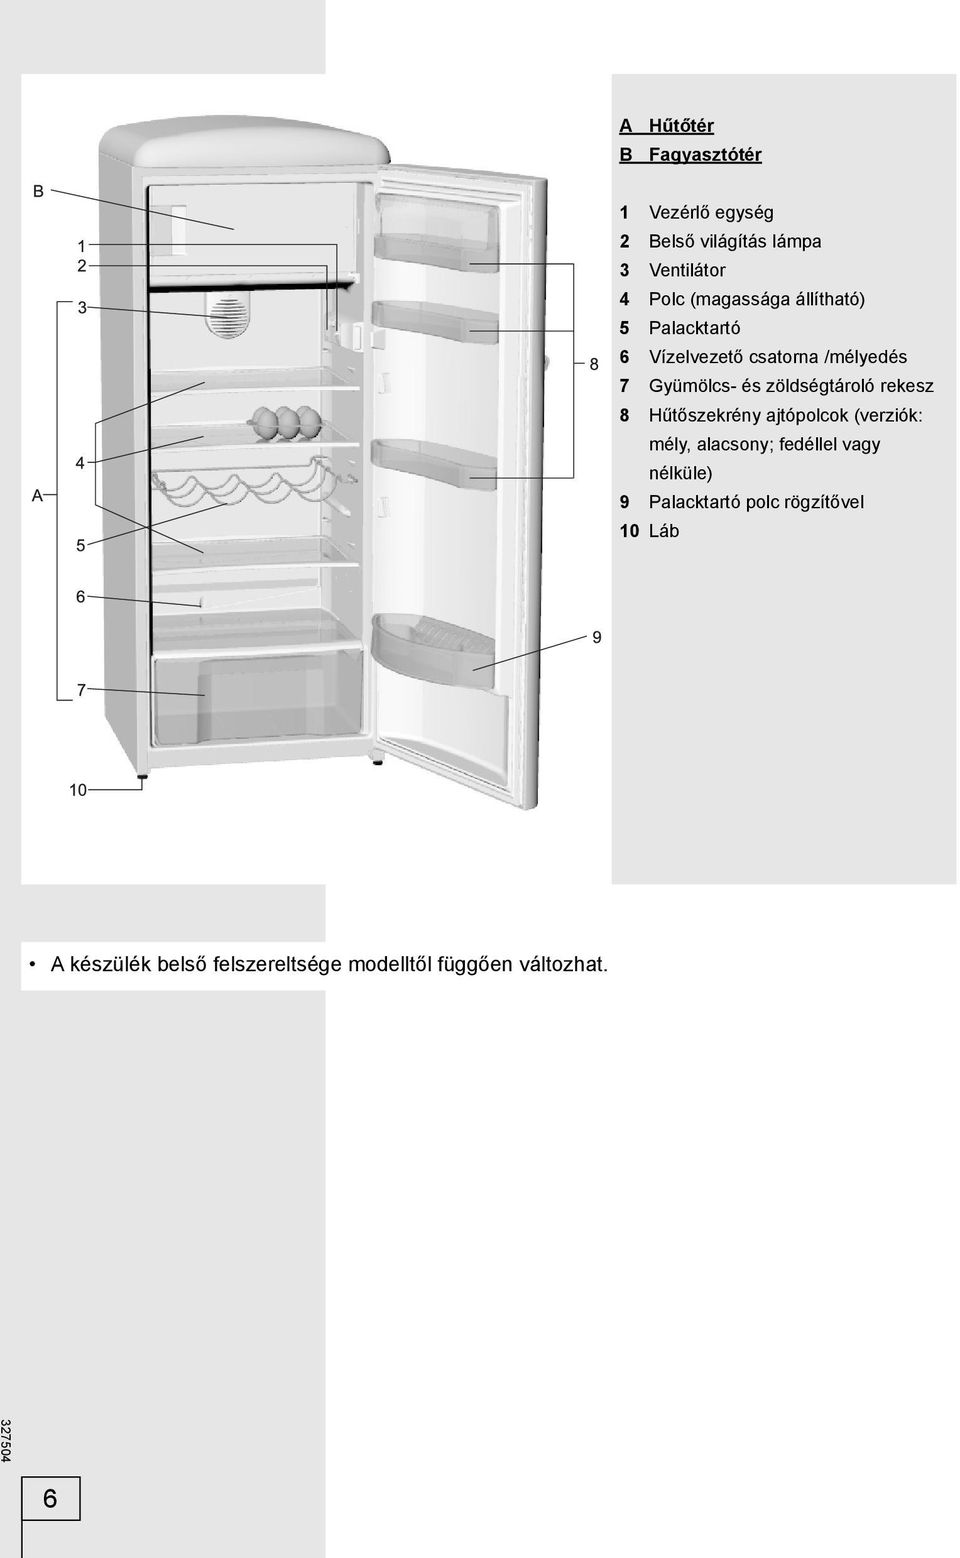 zöldségtároló rekesz 8 Hűtőszekrény ajtópolcok (verziók: mély, alacsony; fedéllel vagy